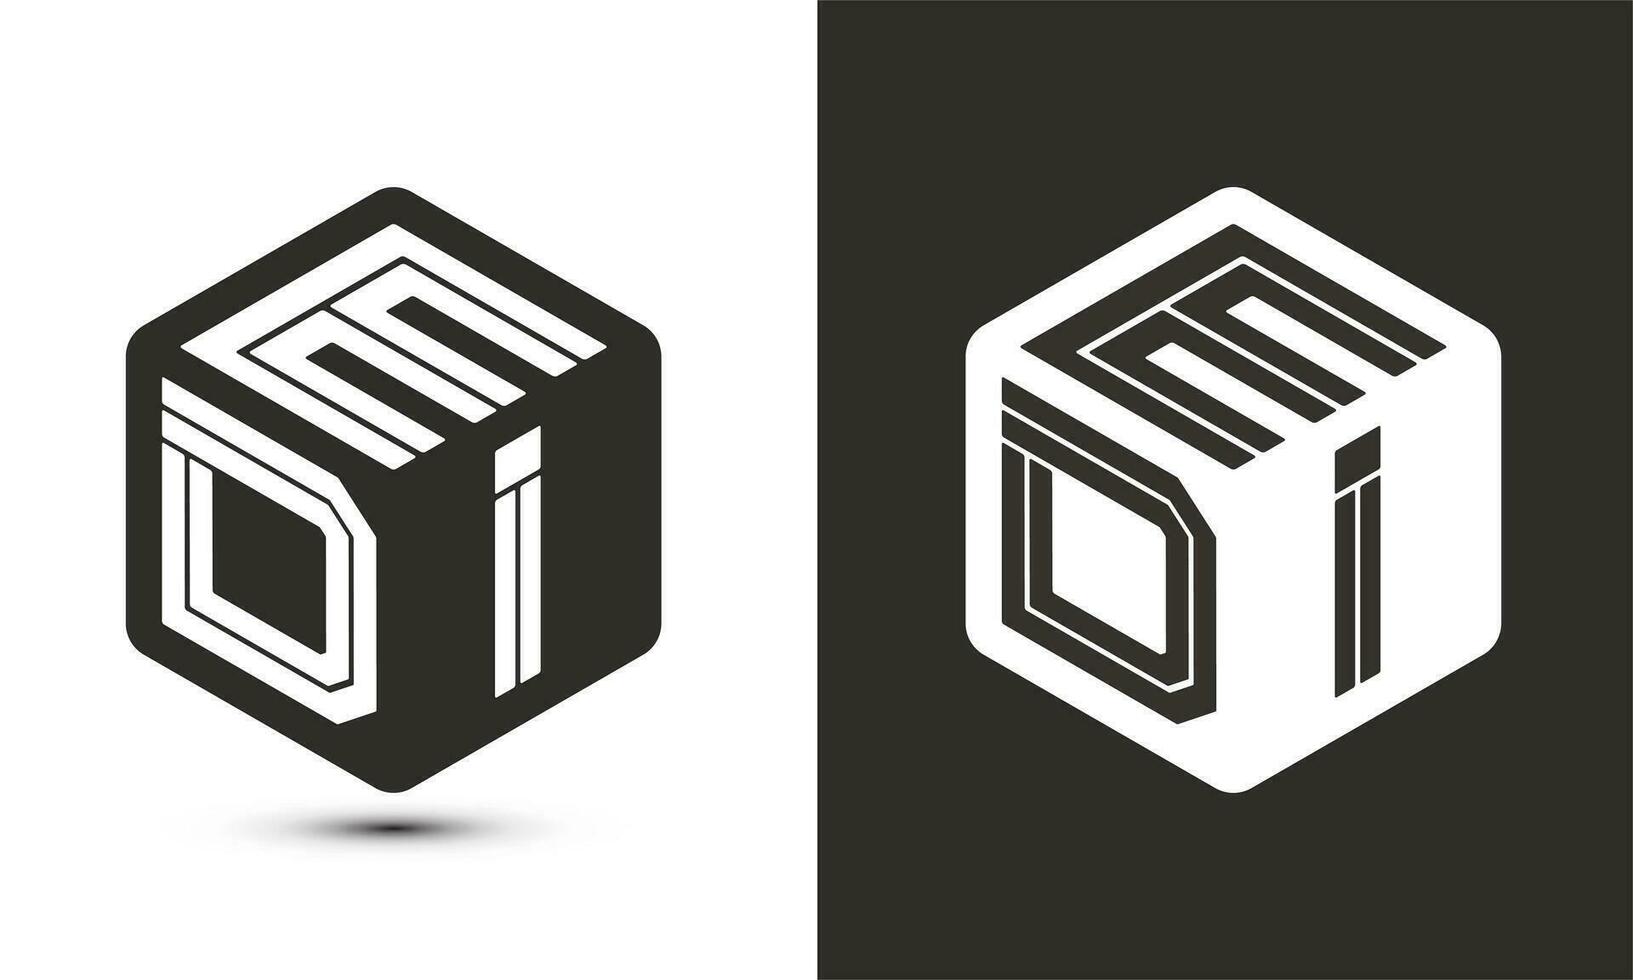 edi brev logotyp design med illustratör kub logotyp, vektor logotyp modern alfabet font överlappning stil.